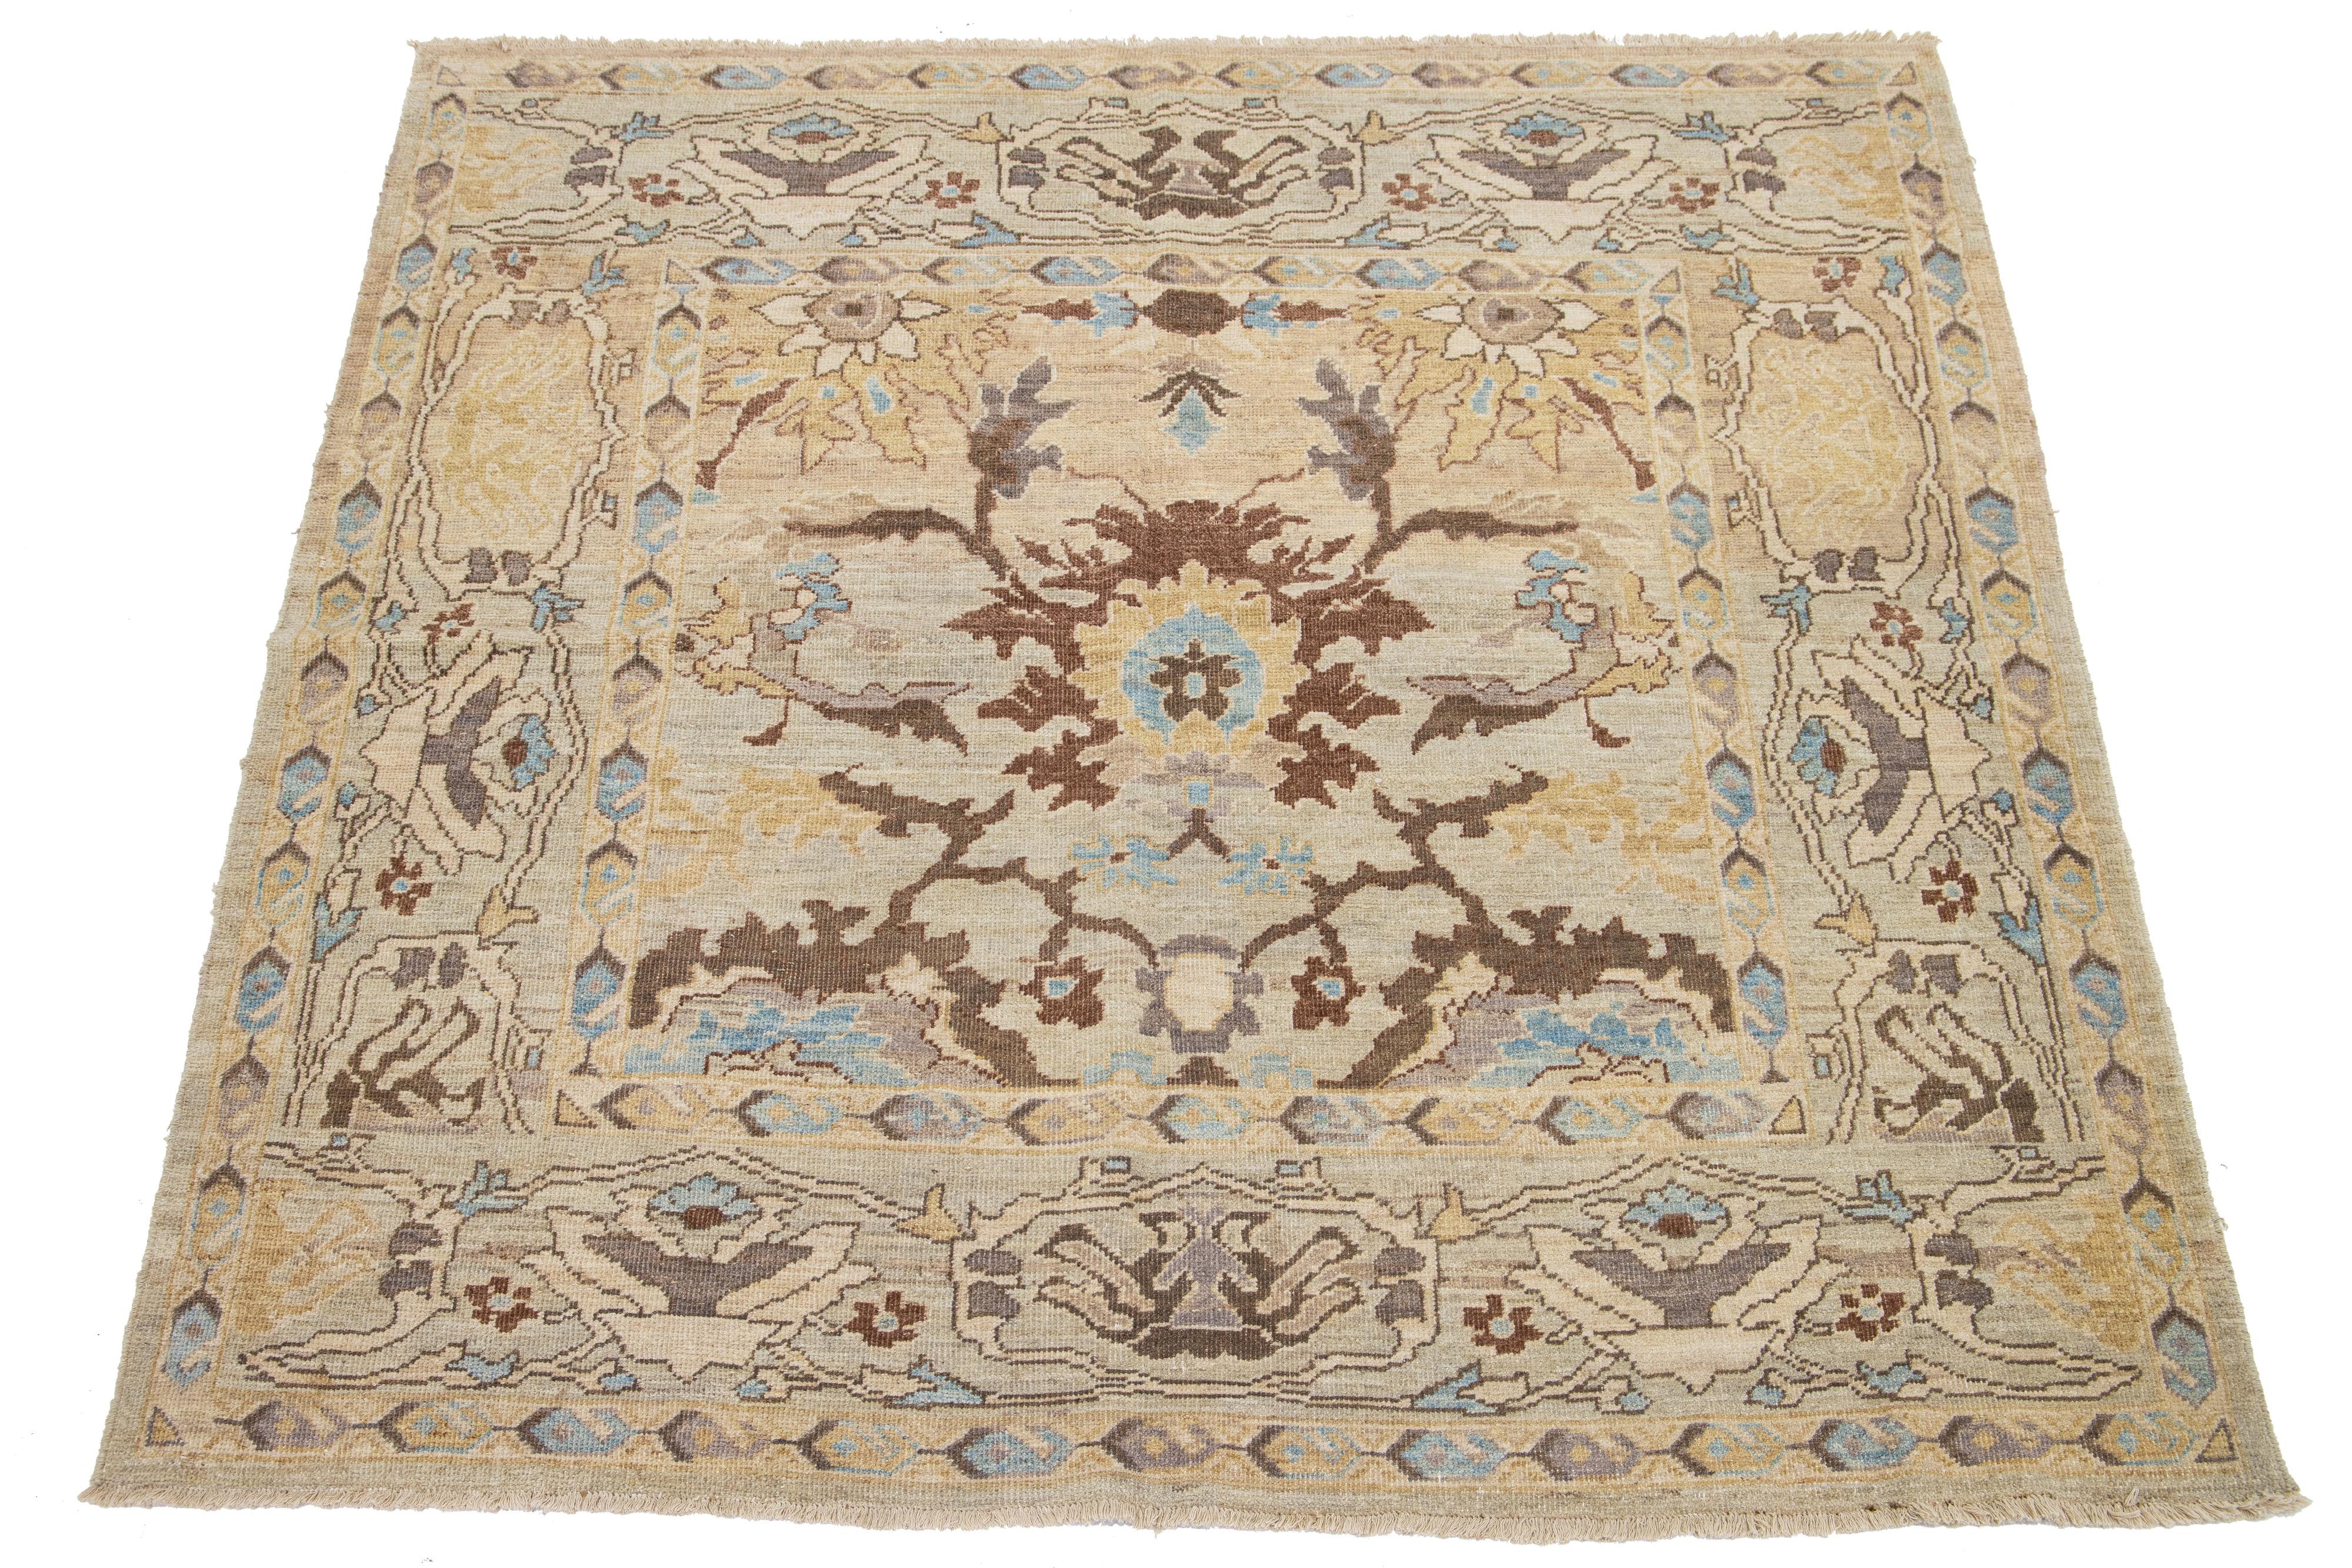 Il s'agit d'un tapis persan en laine noué à la main avec un champ beige. Le motif présente des accents de brun, de bleu et de verge d'or.

Ce tapis mesure 6'2